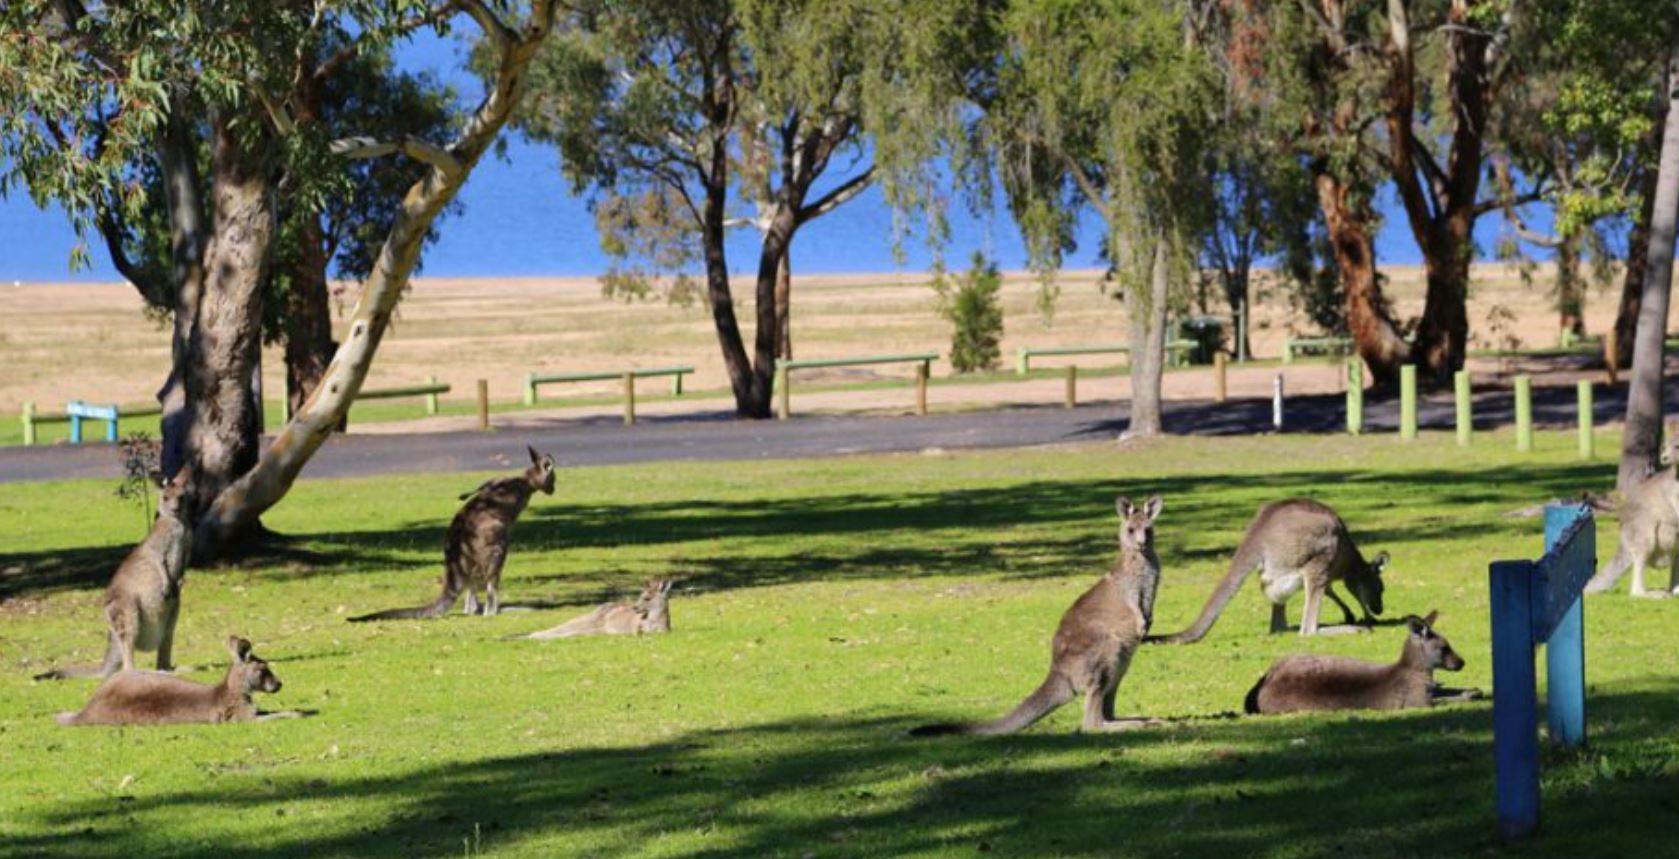 Kangaroos-on-grass